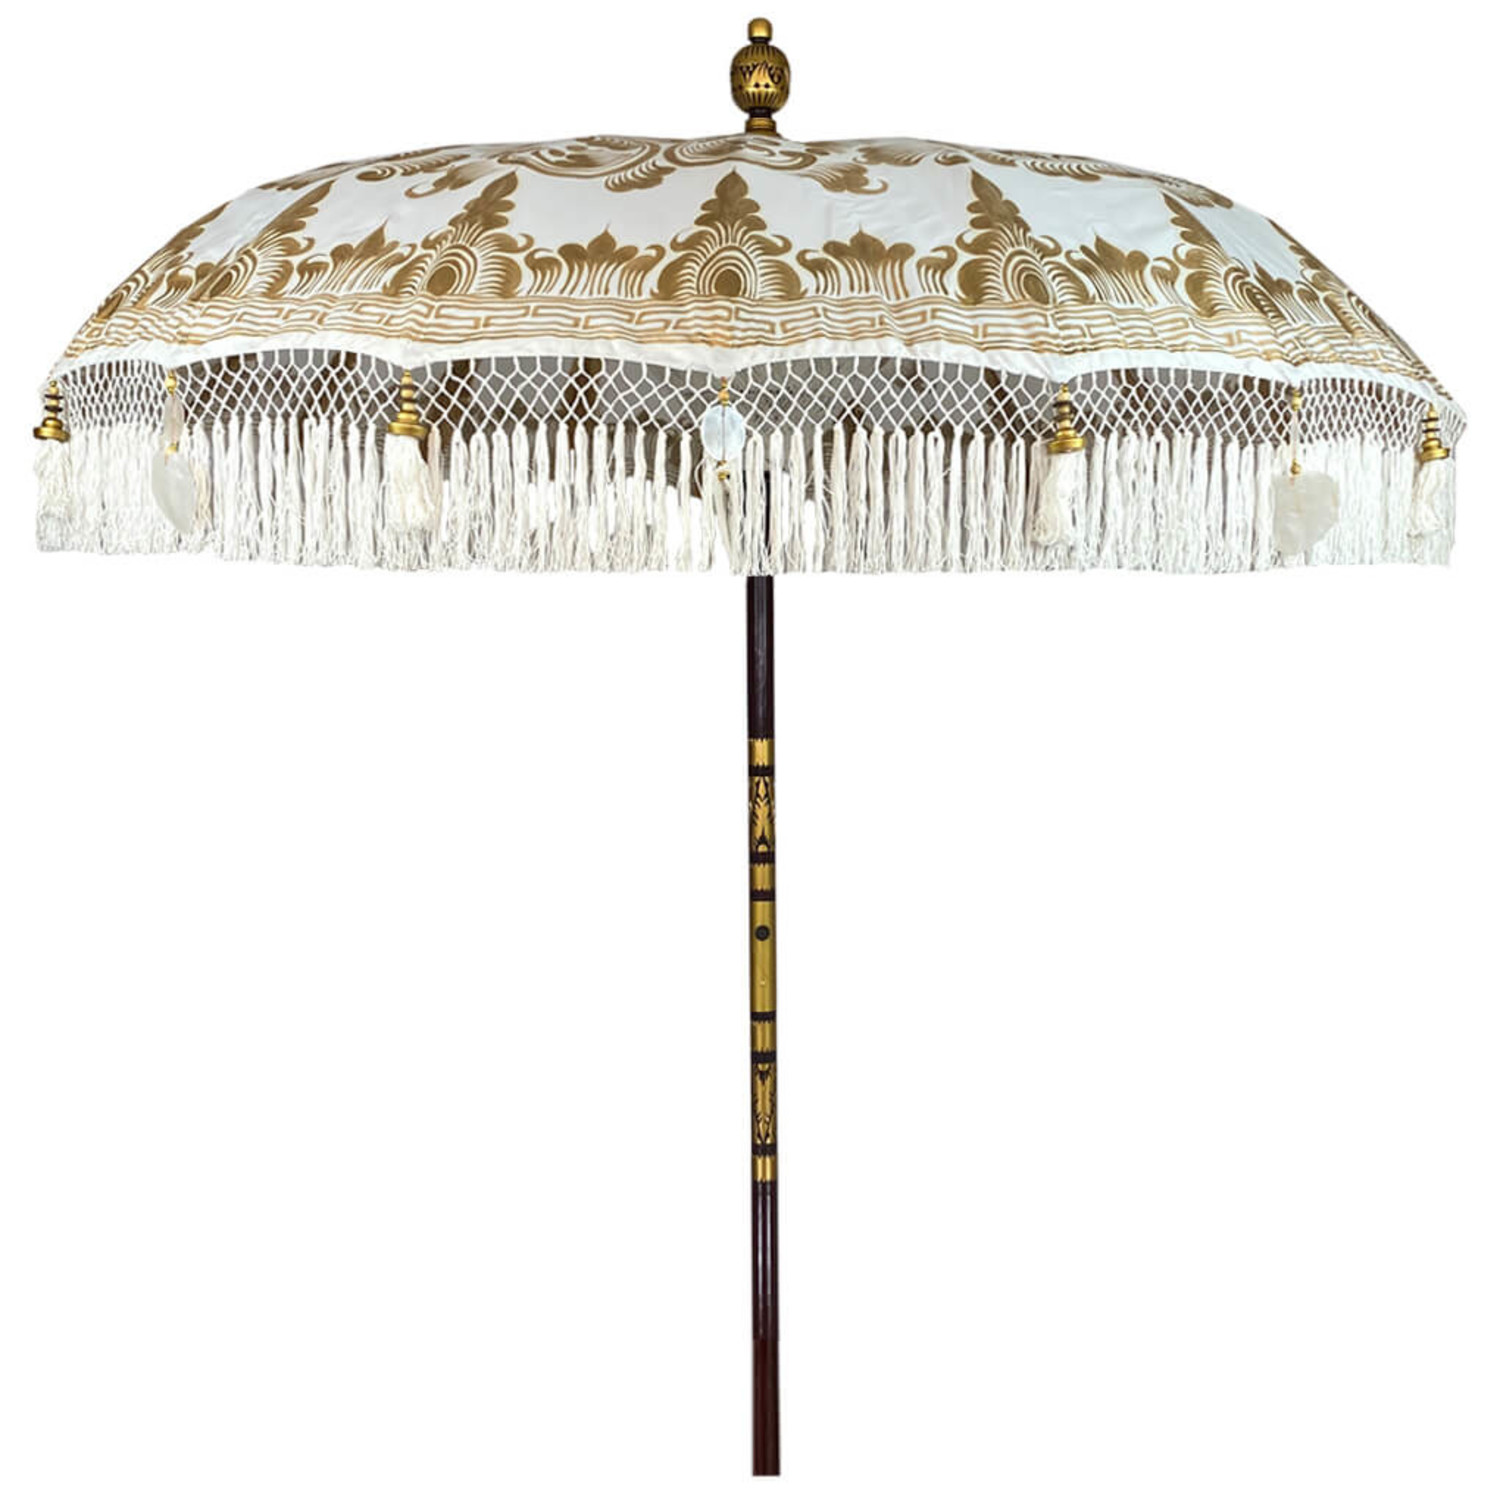 een kopje Giraffe plan ecru/ wit met gouden parasol uit Indonesië - Merel in Wonderland